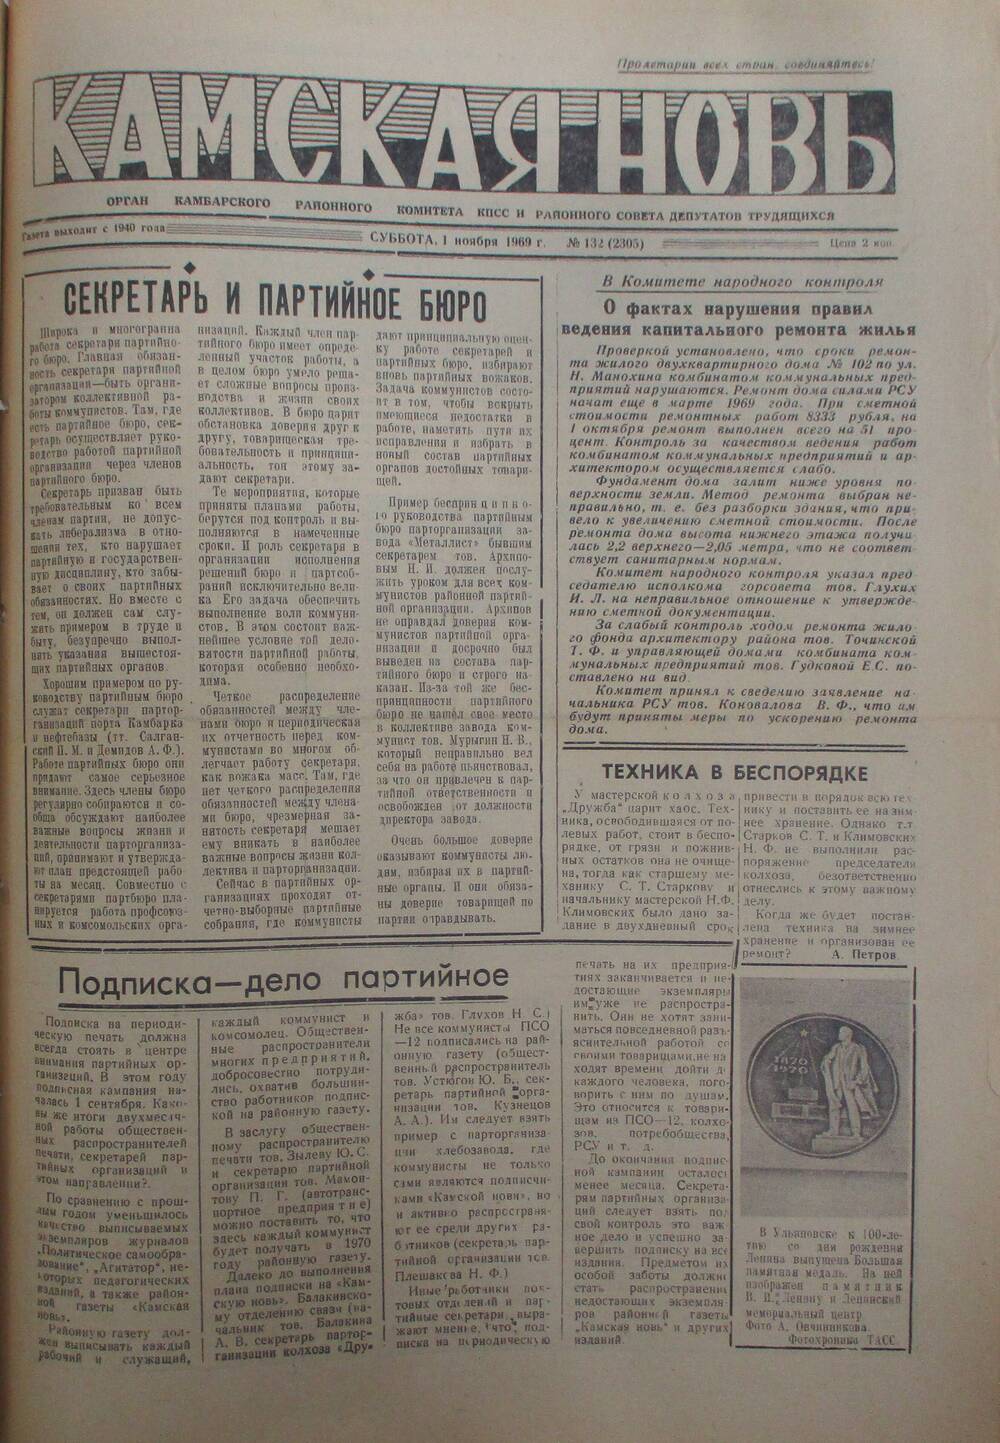 Газеты Камская новь за 1969 год, орган Камбарского райсовета и  РККПСС, с №1 по №66, с №68 по №156. №132.